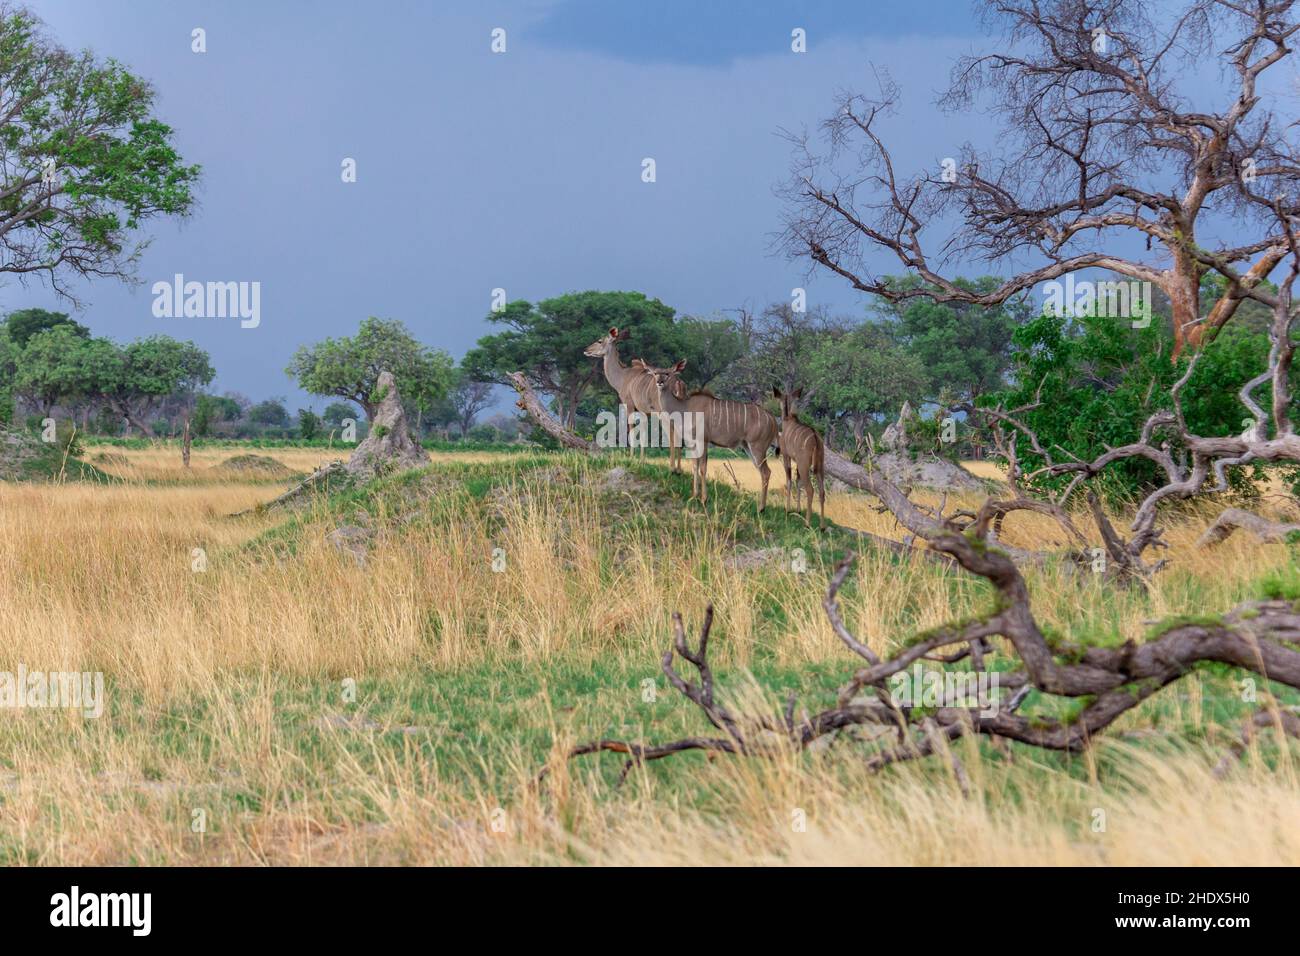 greater kudu, botsuana, greater kudus, tragelaphus strepsiceros, woodland antelope Stock Photo